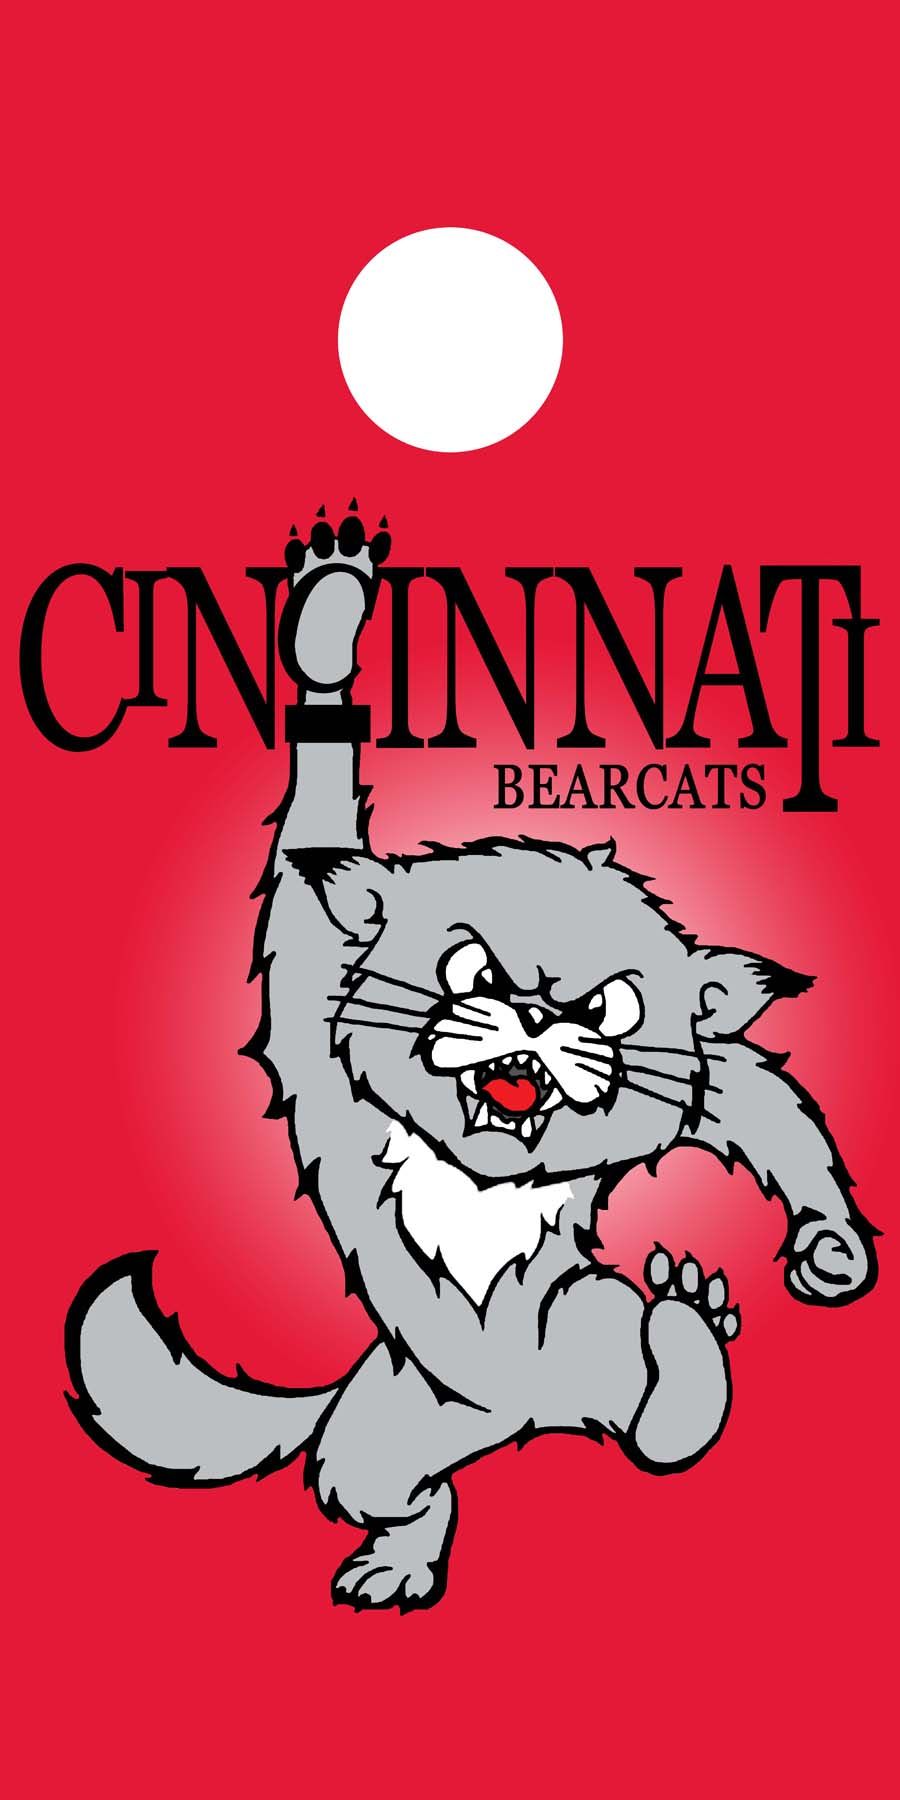 Cincinnati Bearcats. Cincinnati bearcats, Bearcats, Cincinnati